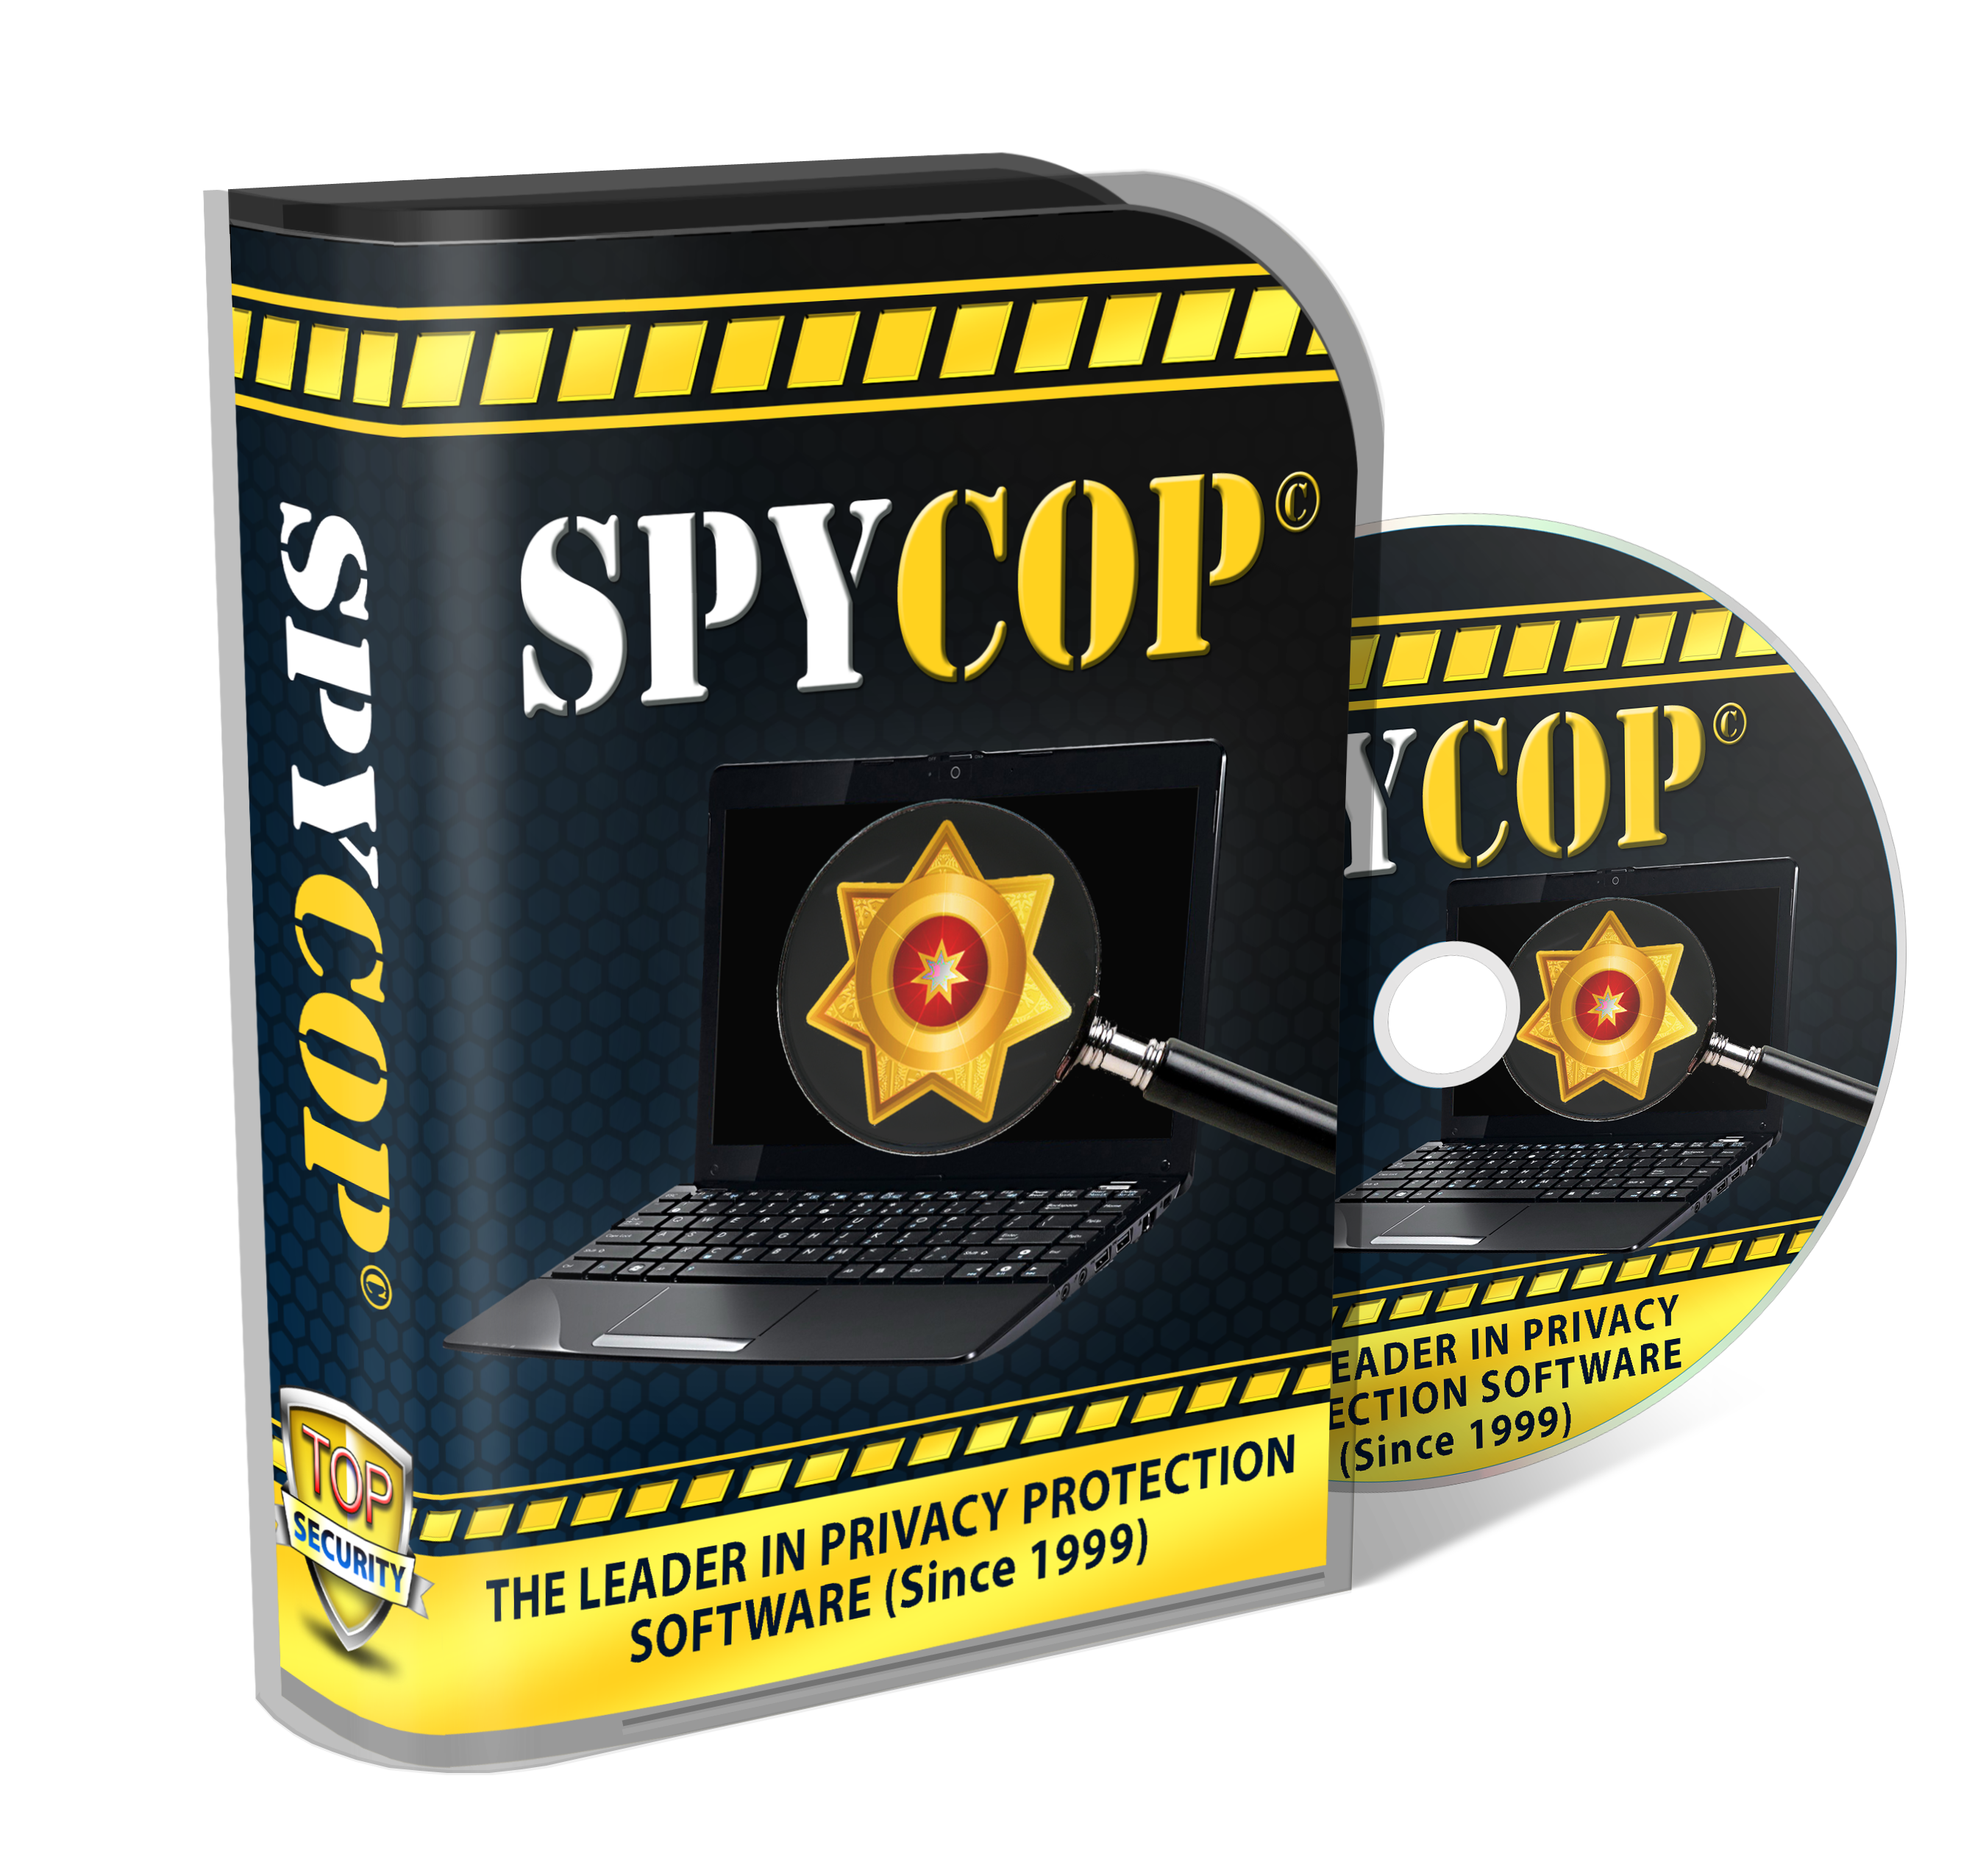 SpyCop